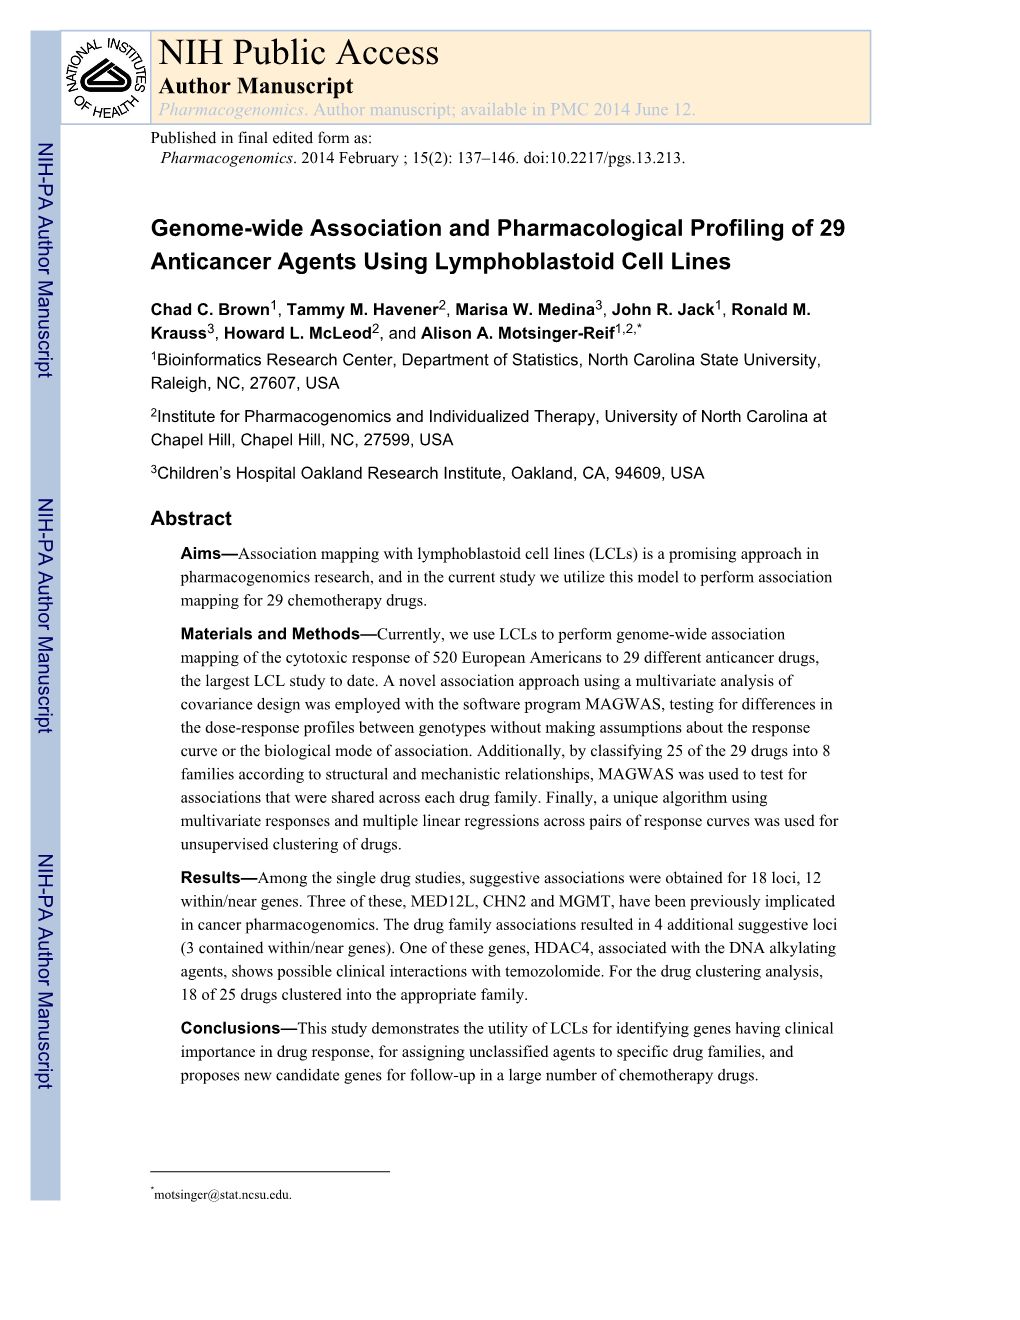 NIH Public Access Author Manuscript Pharmacogenomics